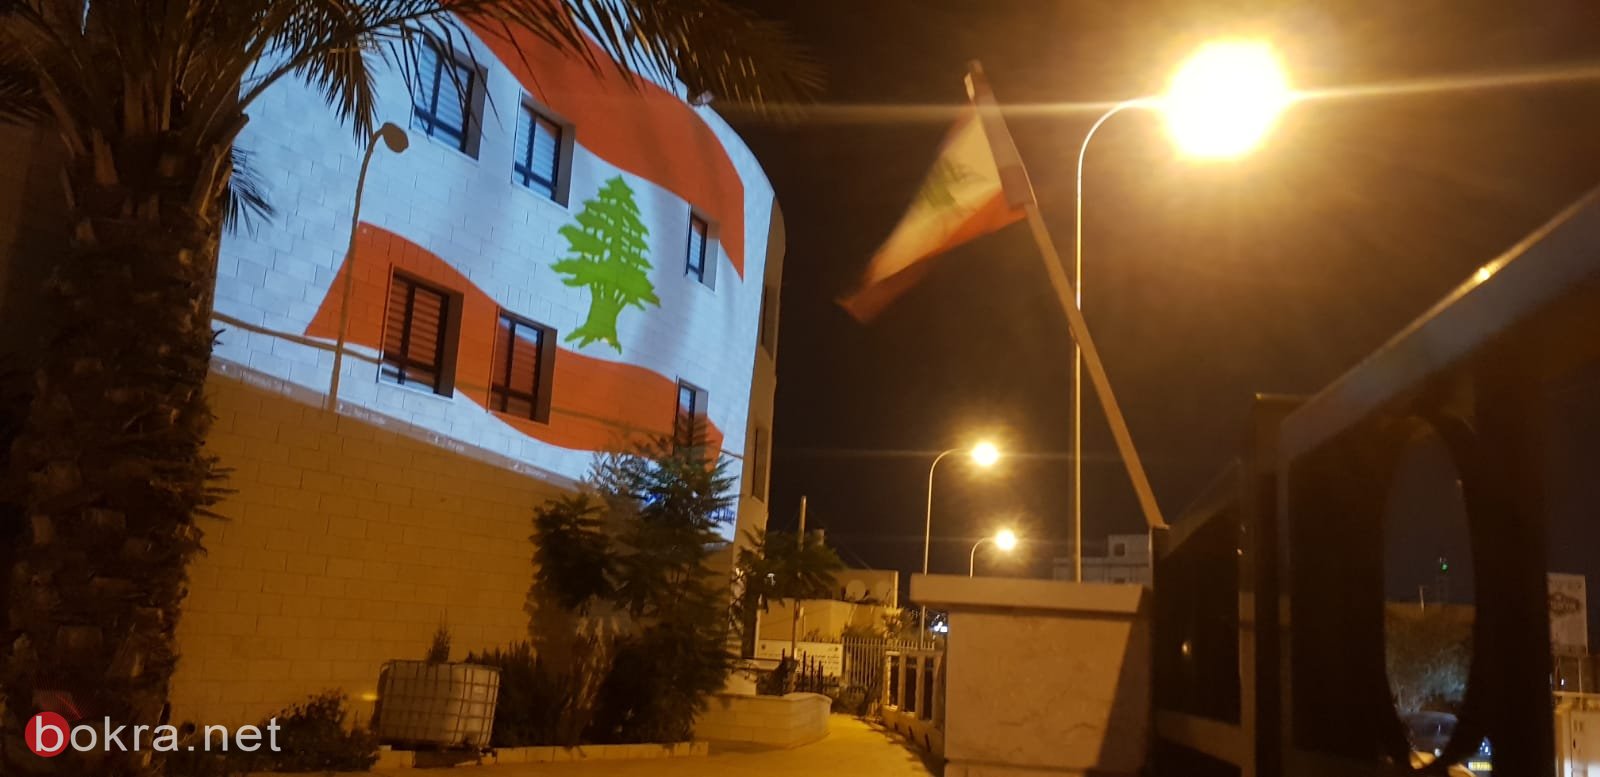 إضاءة مبنى بلديّة عرابة بالعلم اللبناني تضامنًا مع ضحايا كارثة مرفأ بيروت-0